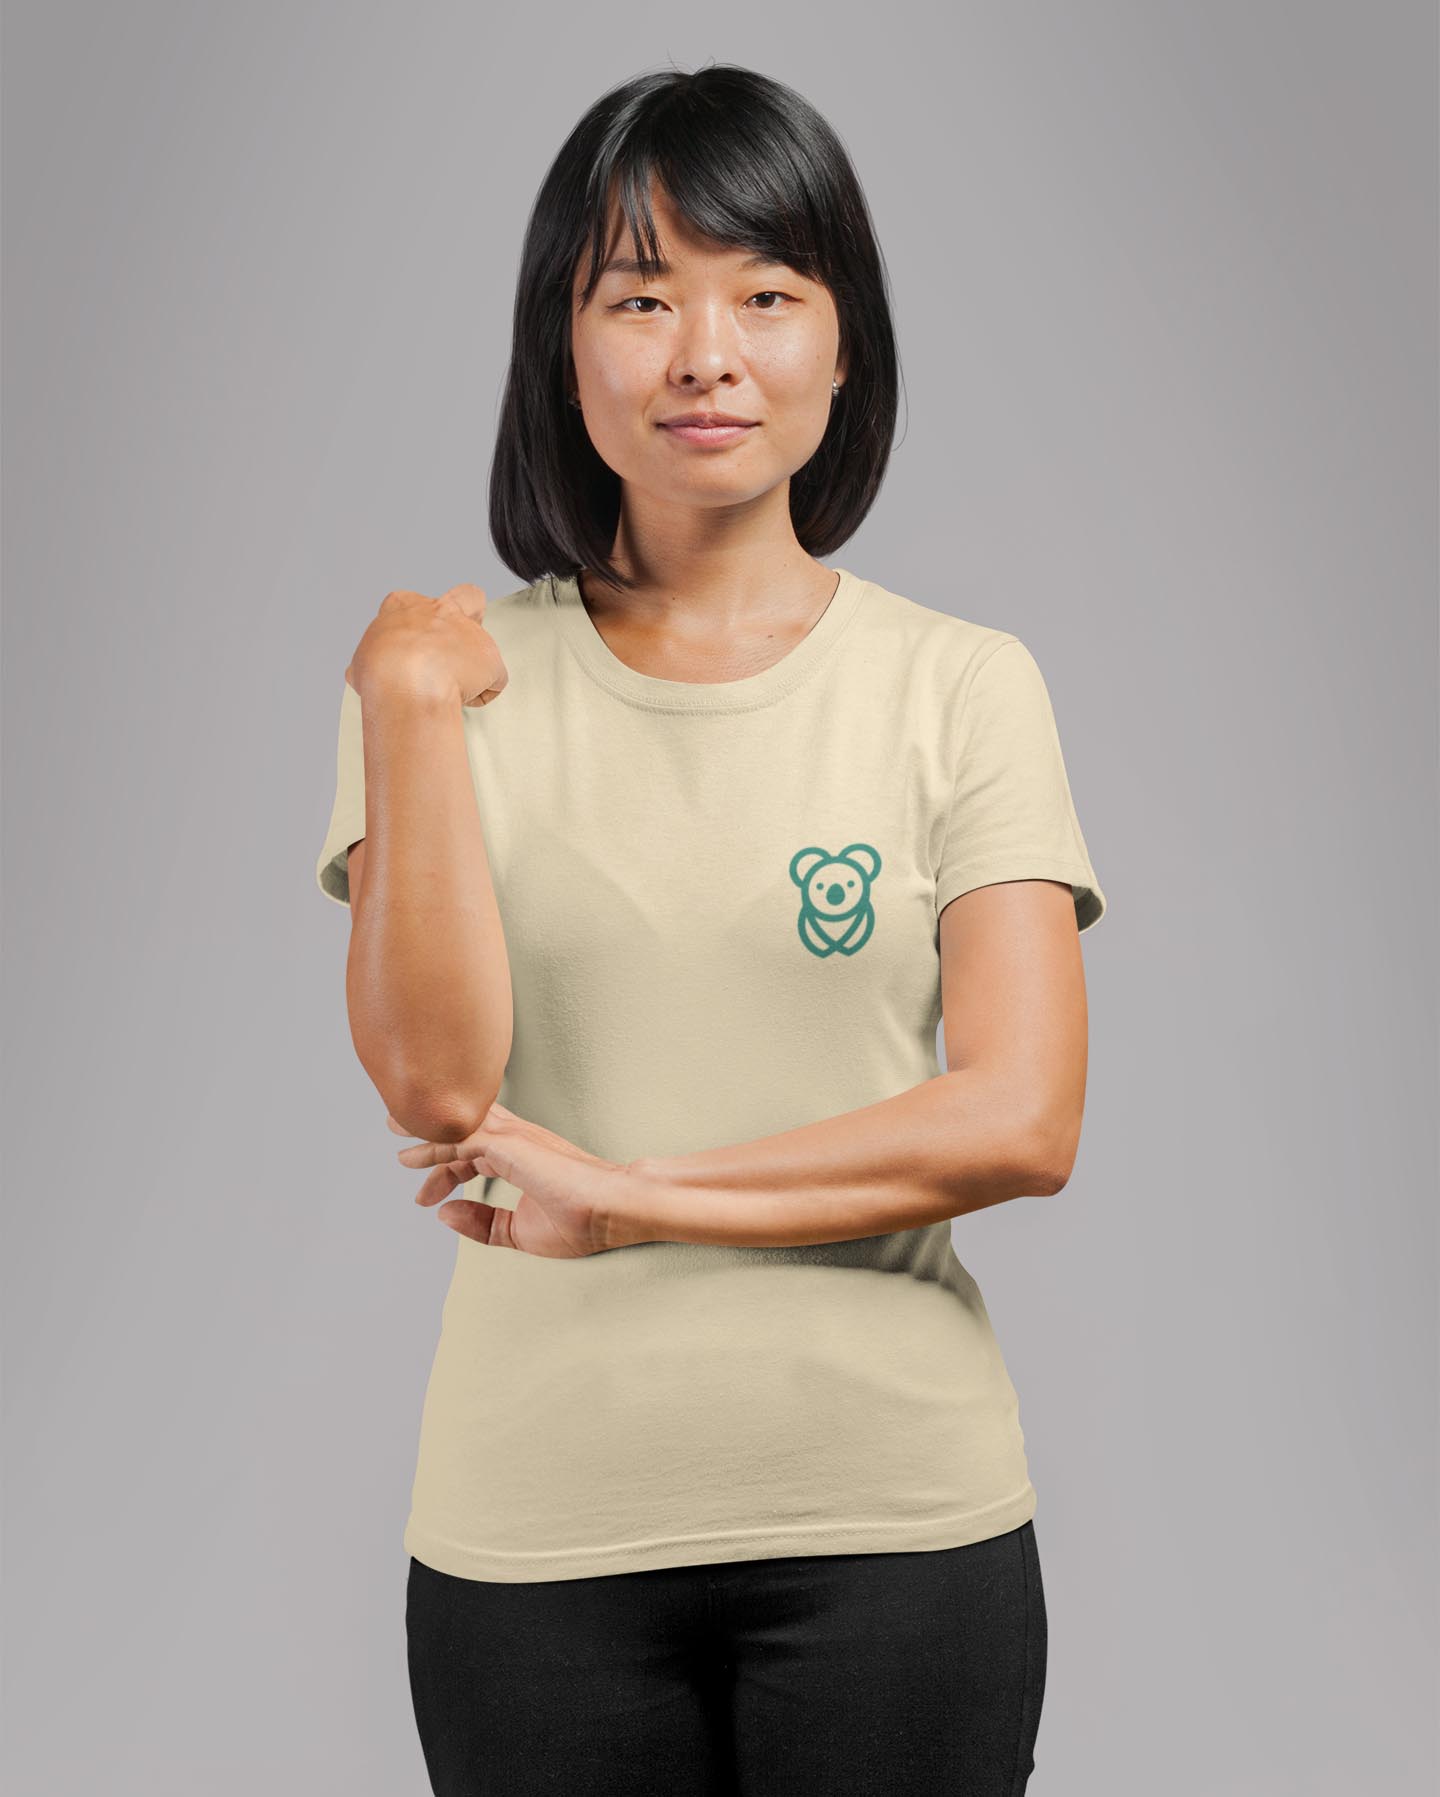 Pocket print beige unisex t shirt for women